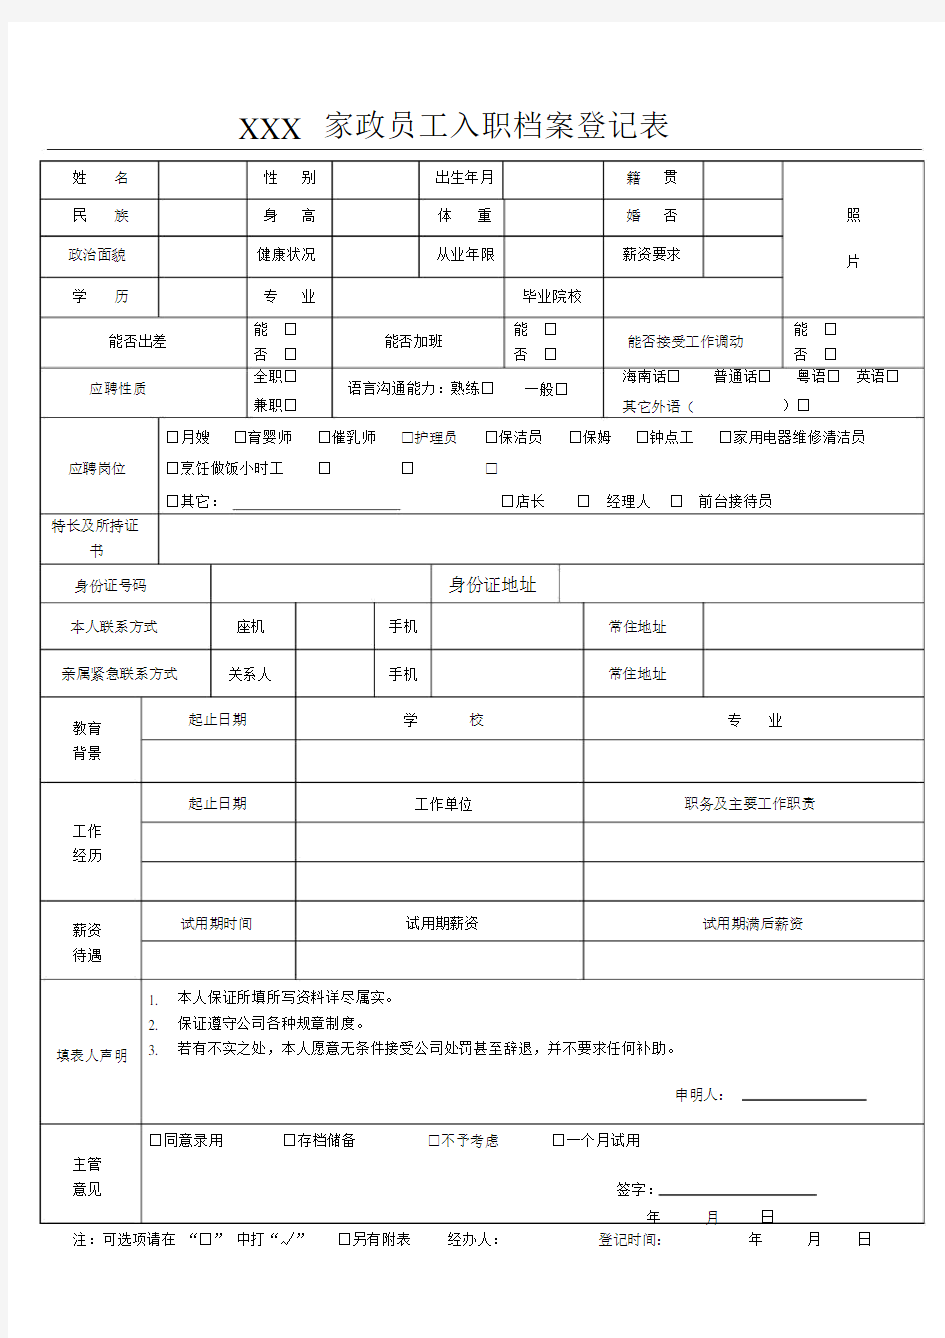 (完整版)家政服务员入职档案登记表(精华版).doc